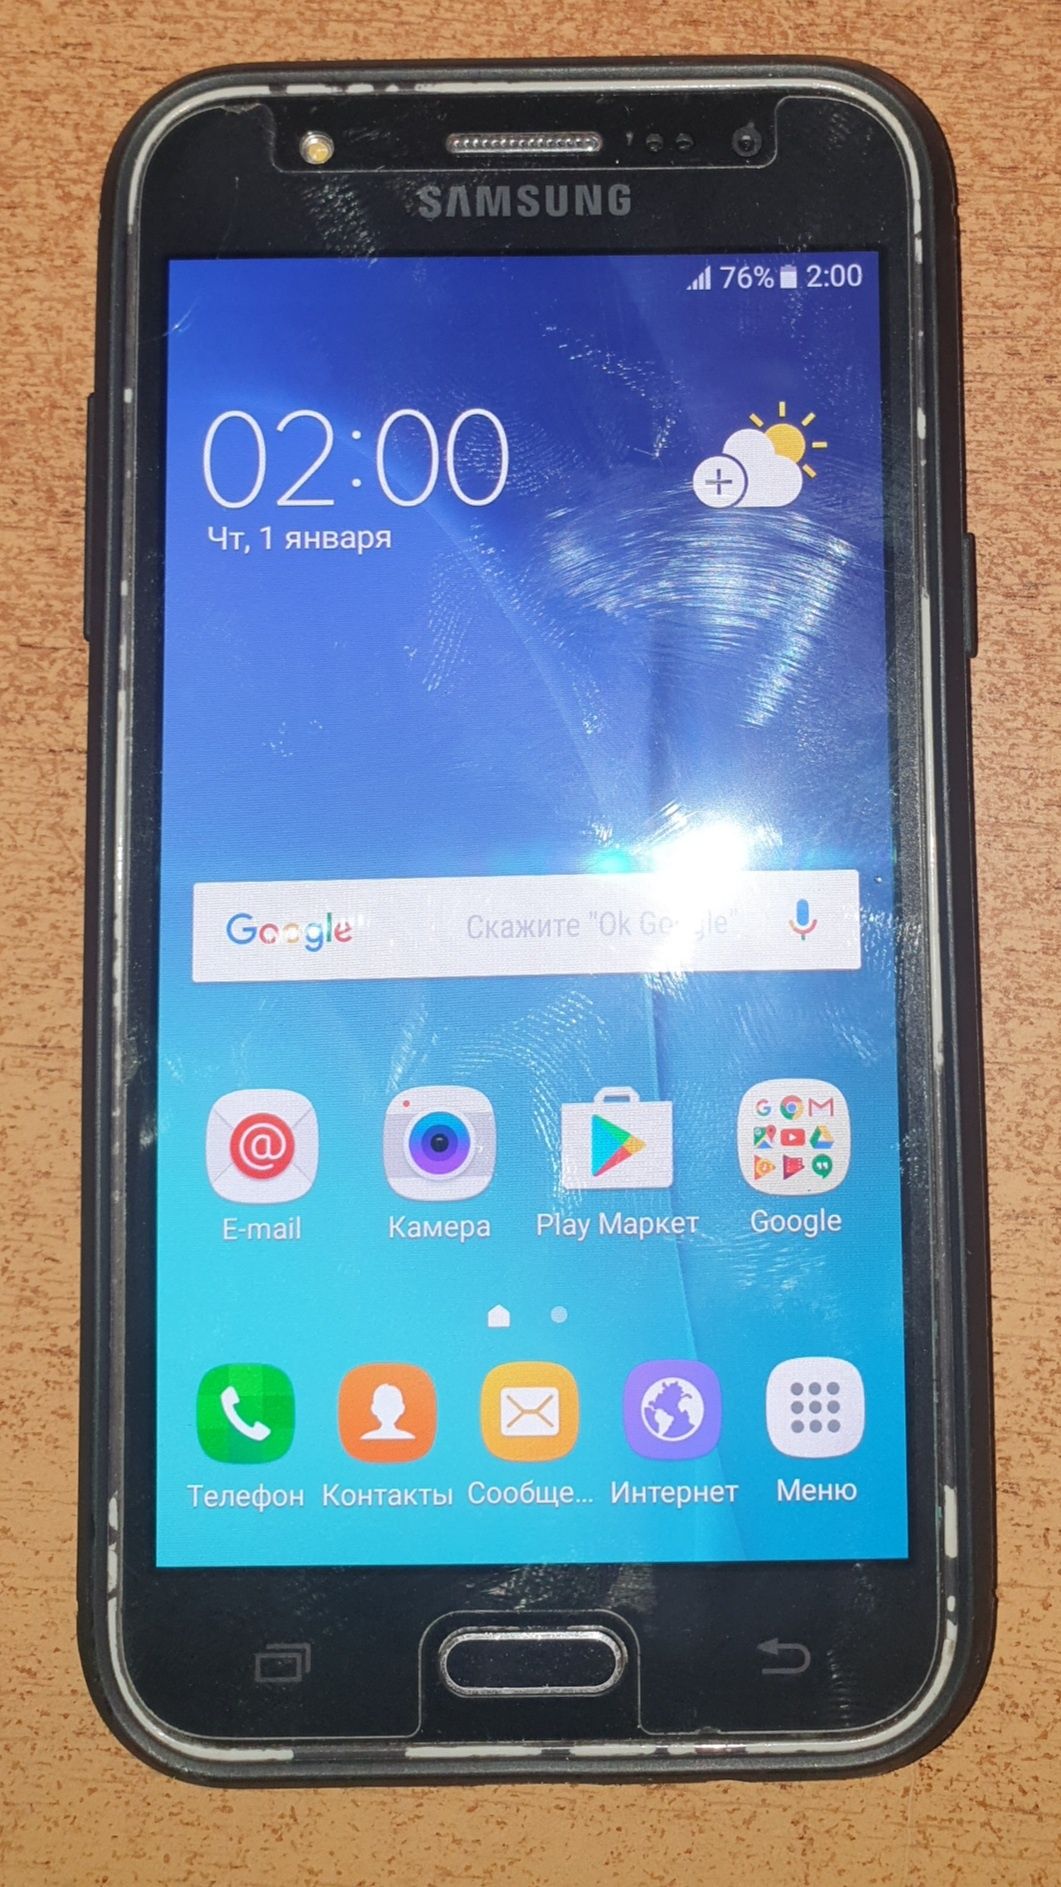 Марка телефона: Samsung  j 5  2015 год продам
Состояние: Б/у
Операцион